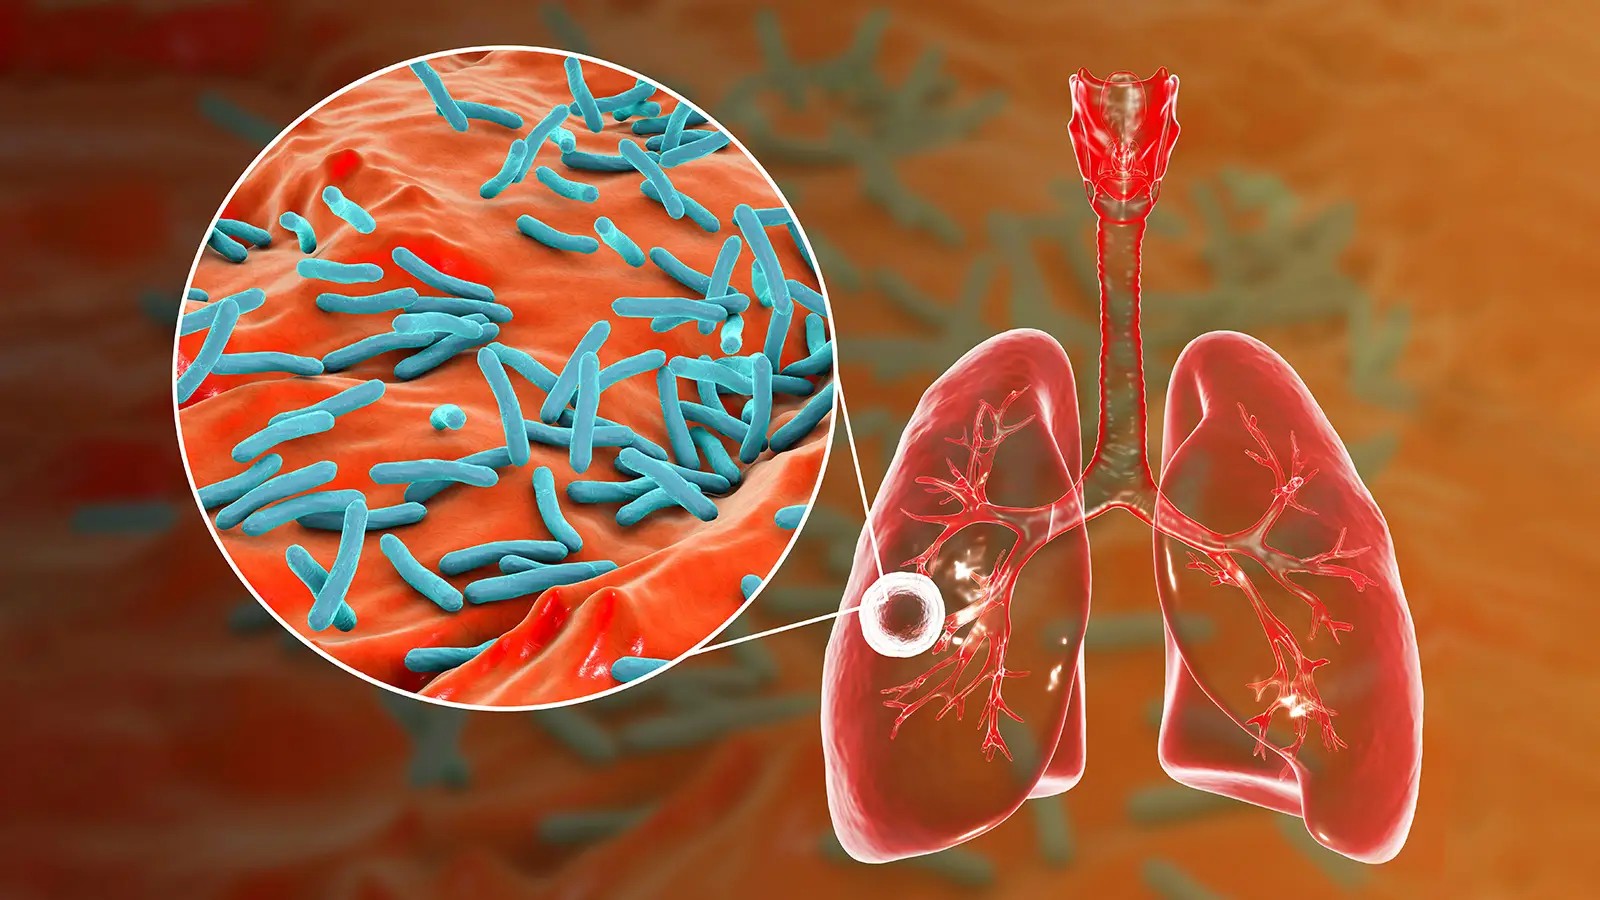 Lao phổi là bệnh truyền nhiễm nguy hiểm